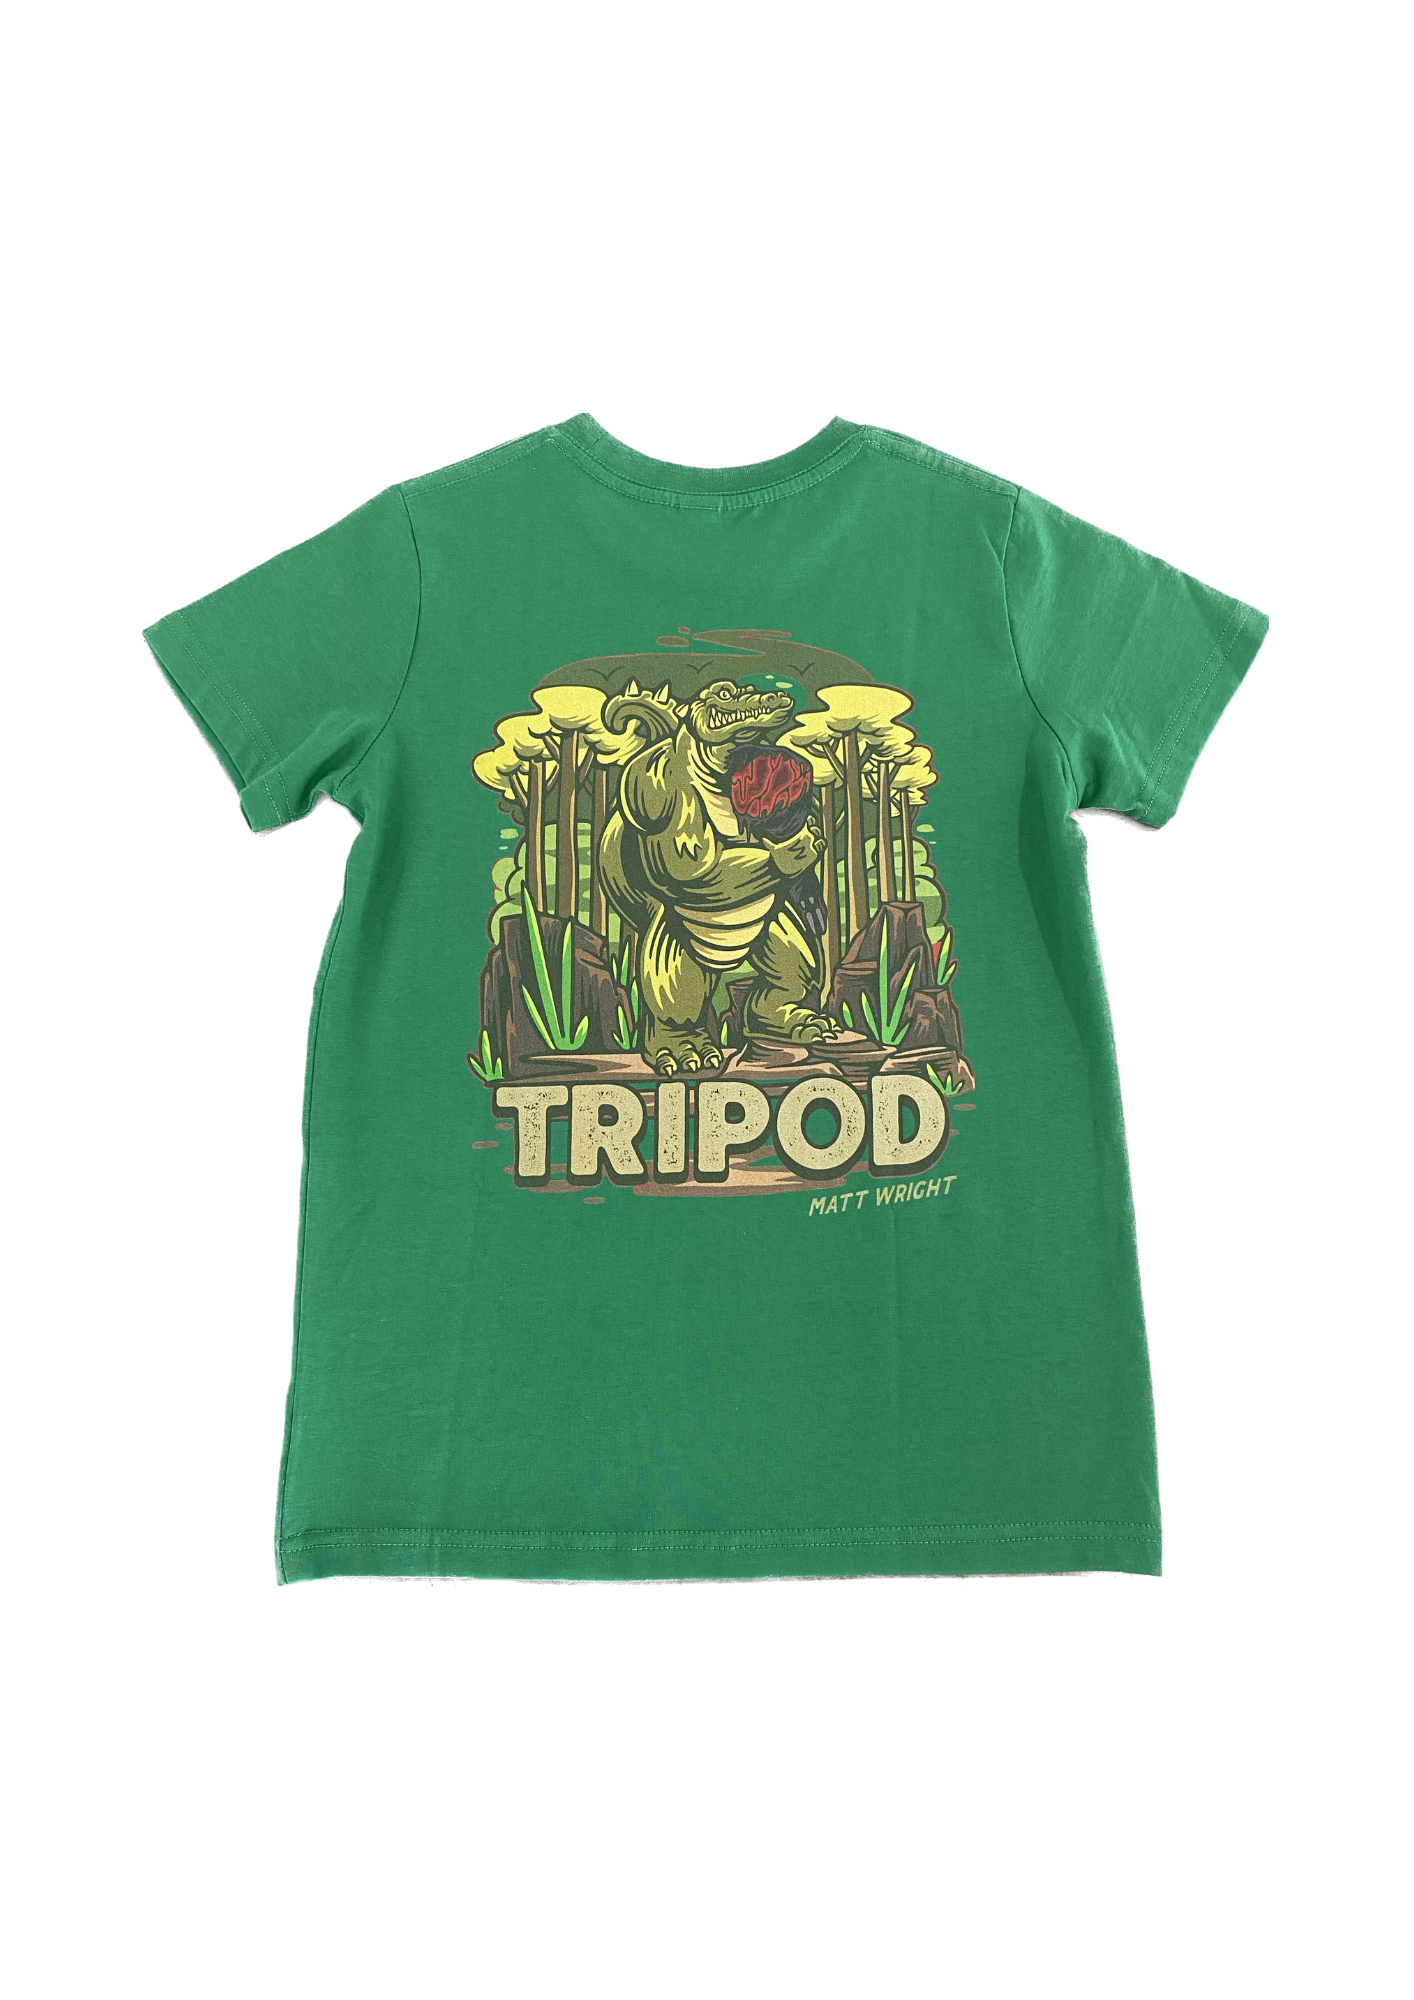 Tripod Kids and Youth Tee Unisex | Matt Wright | Wild Territory